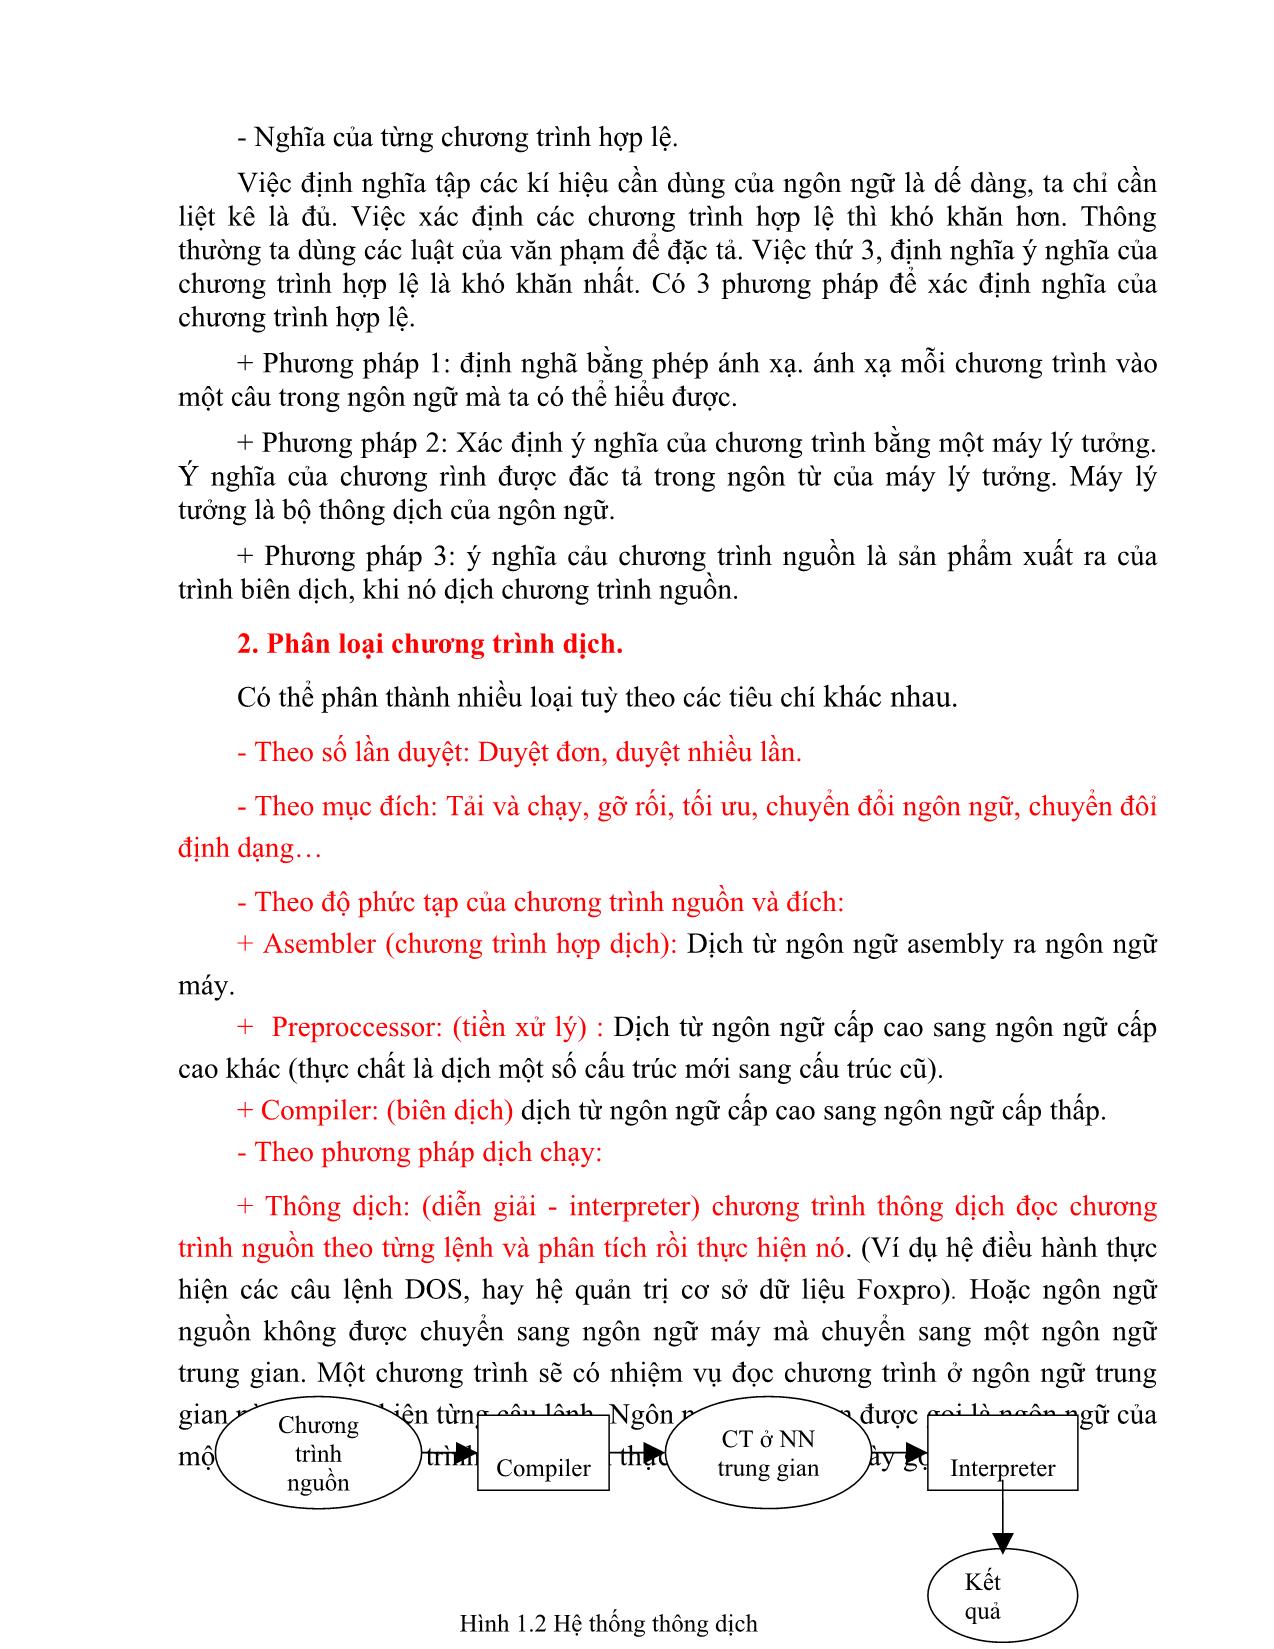 Giáo trình môn Chương trình dịch (Phần 1) trang 6